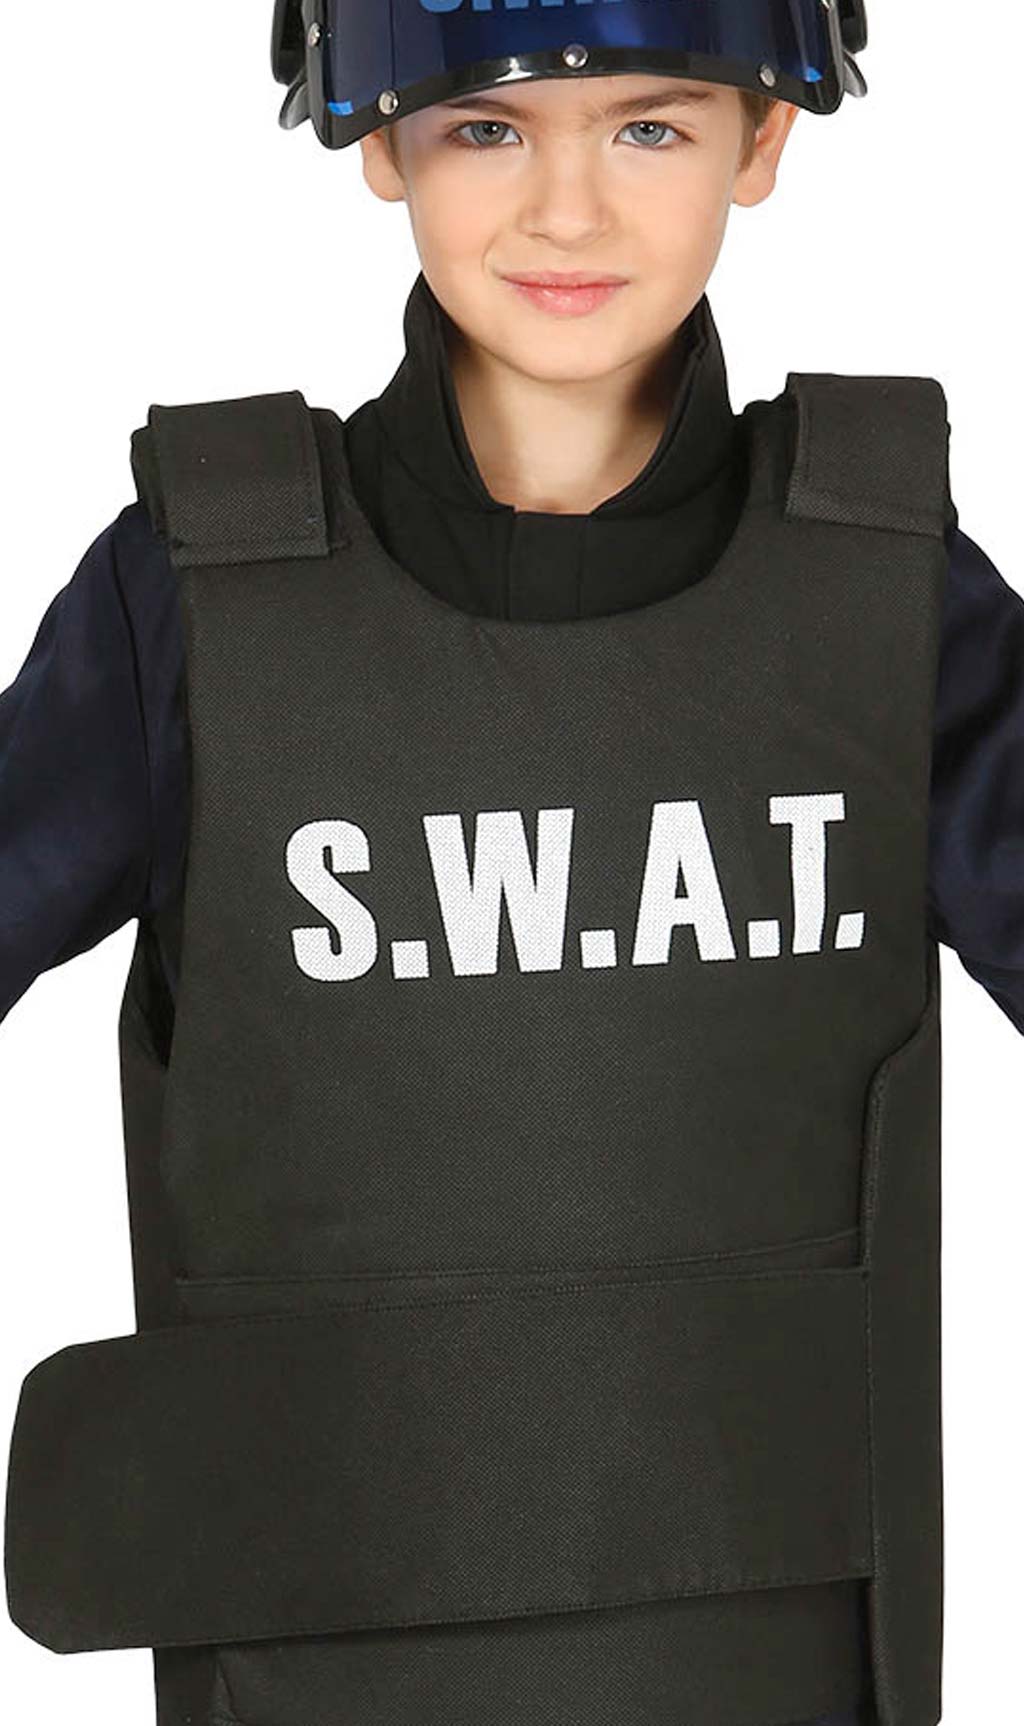 Chaleco de Swat para niño y niña